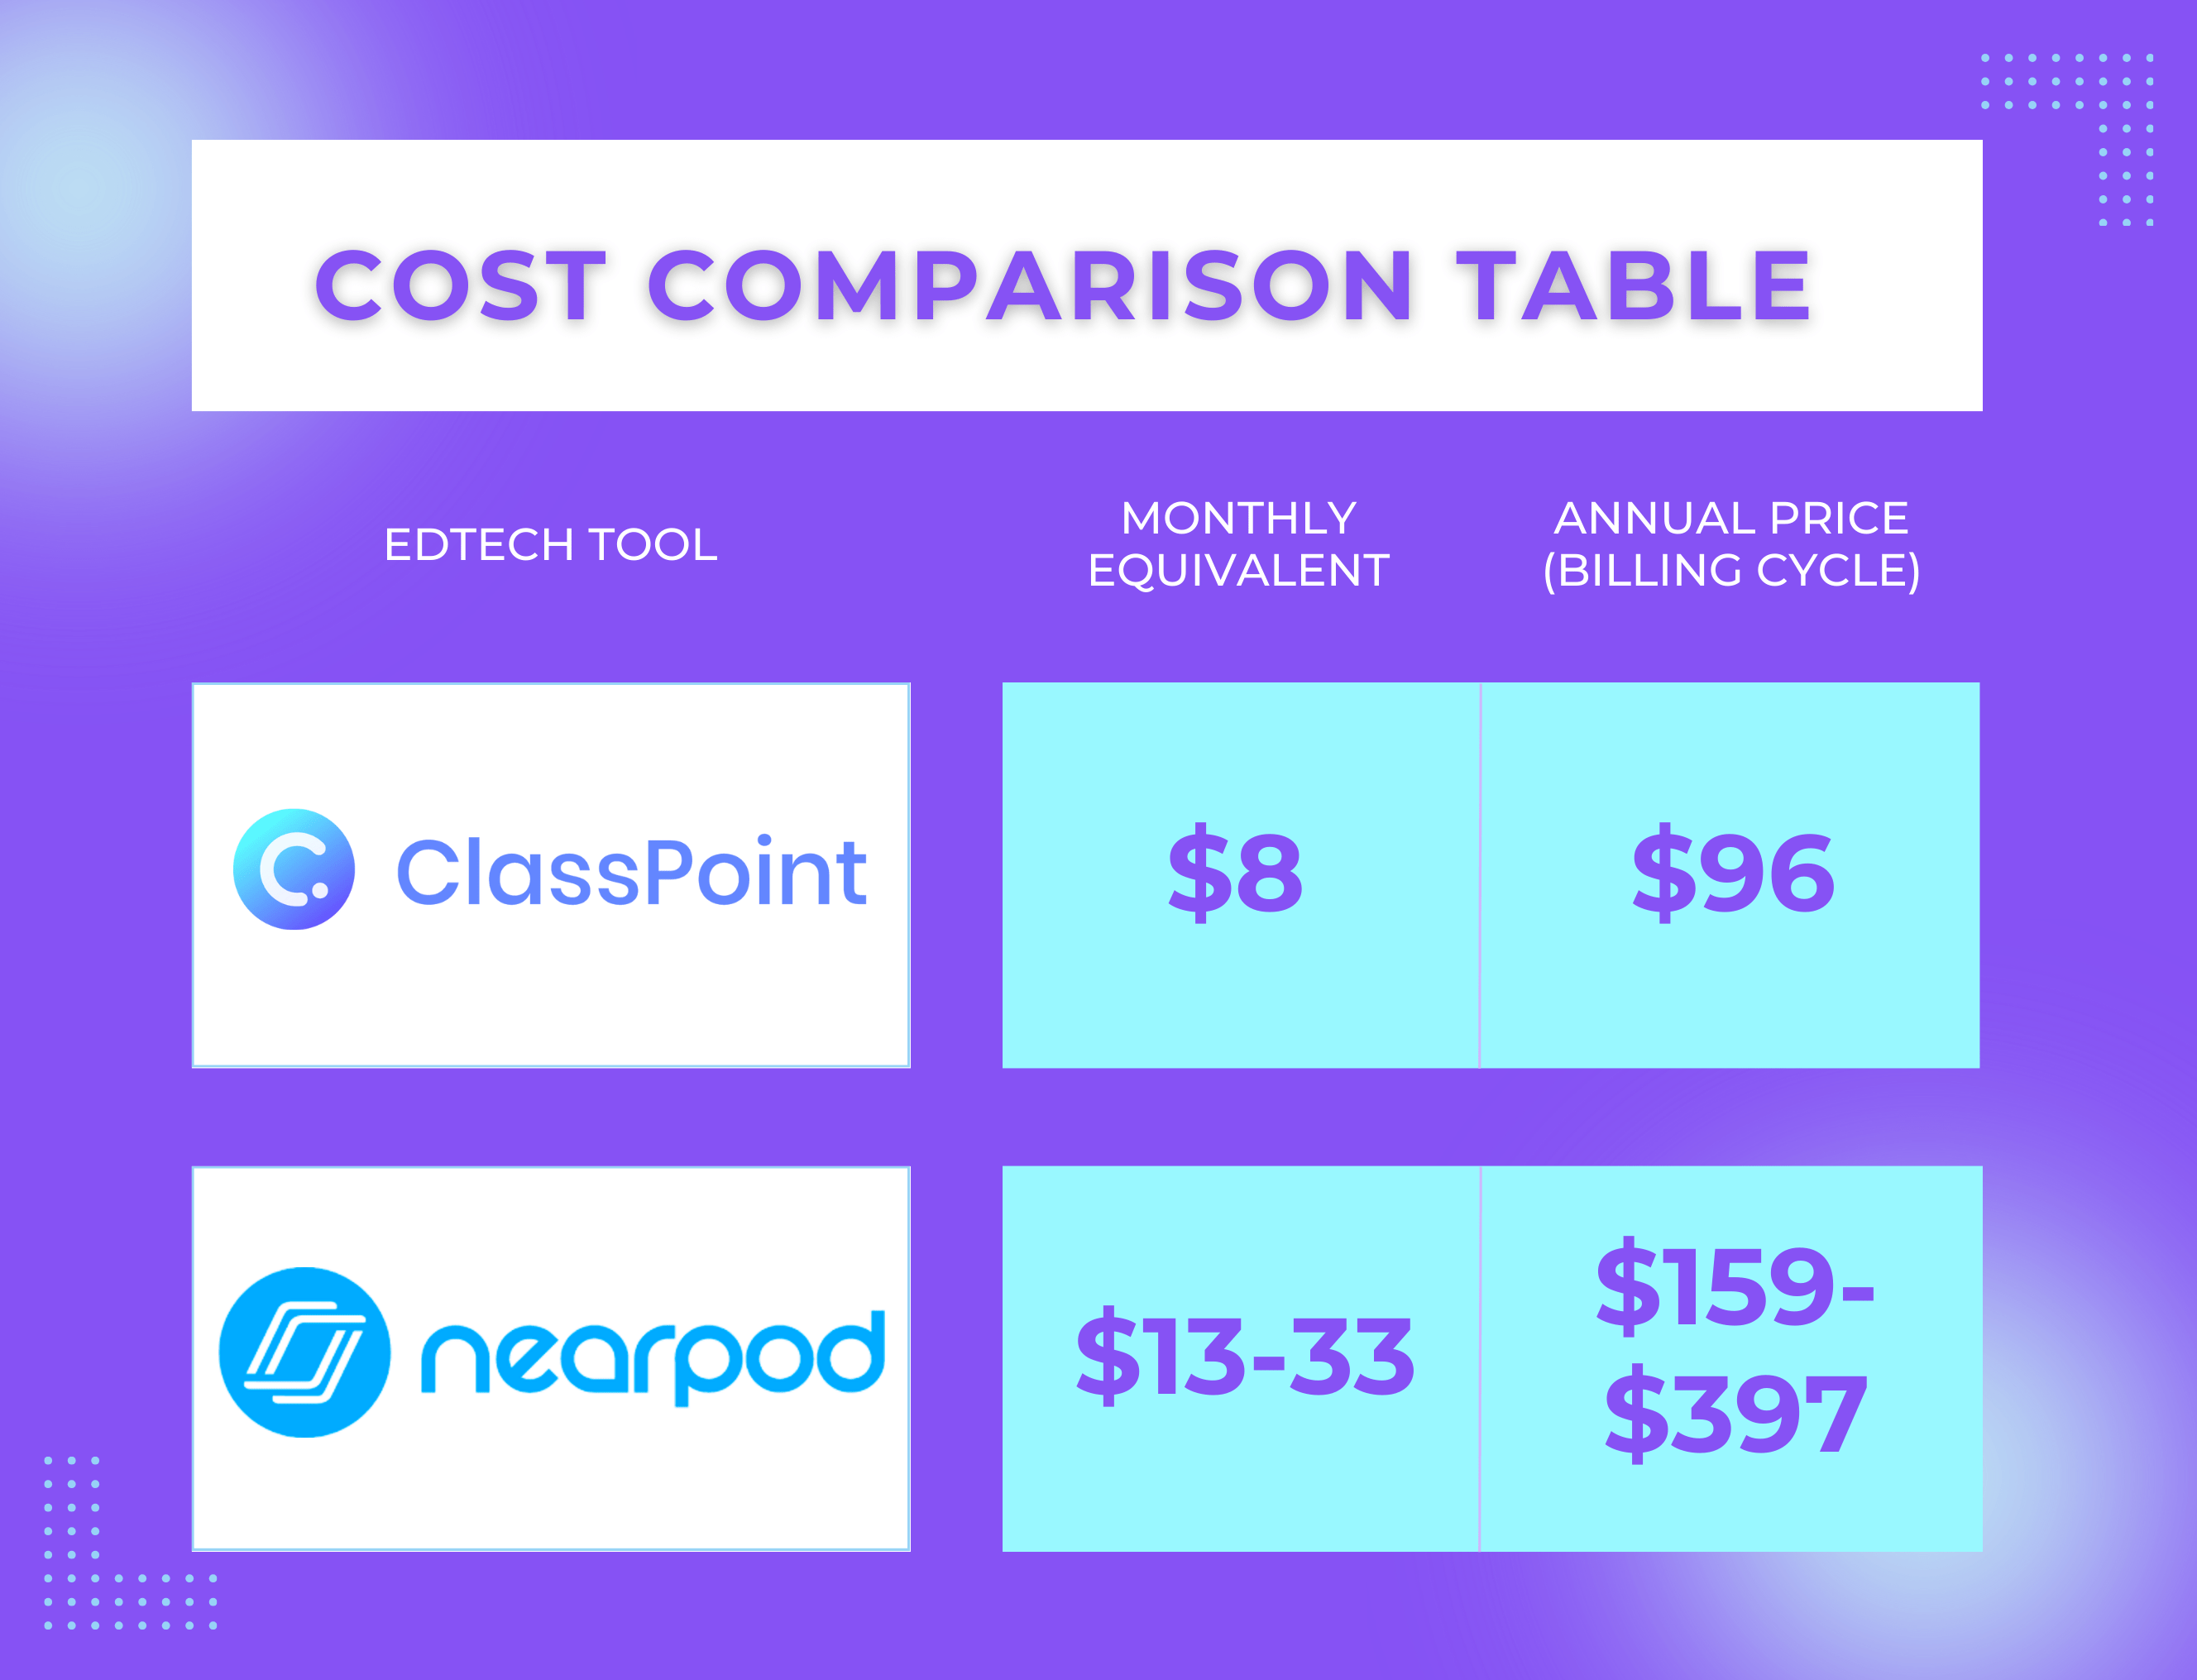 ราคา ClassPoint เทียบกับ Nearpod